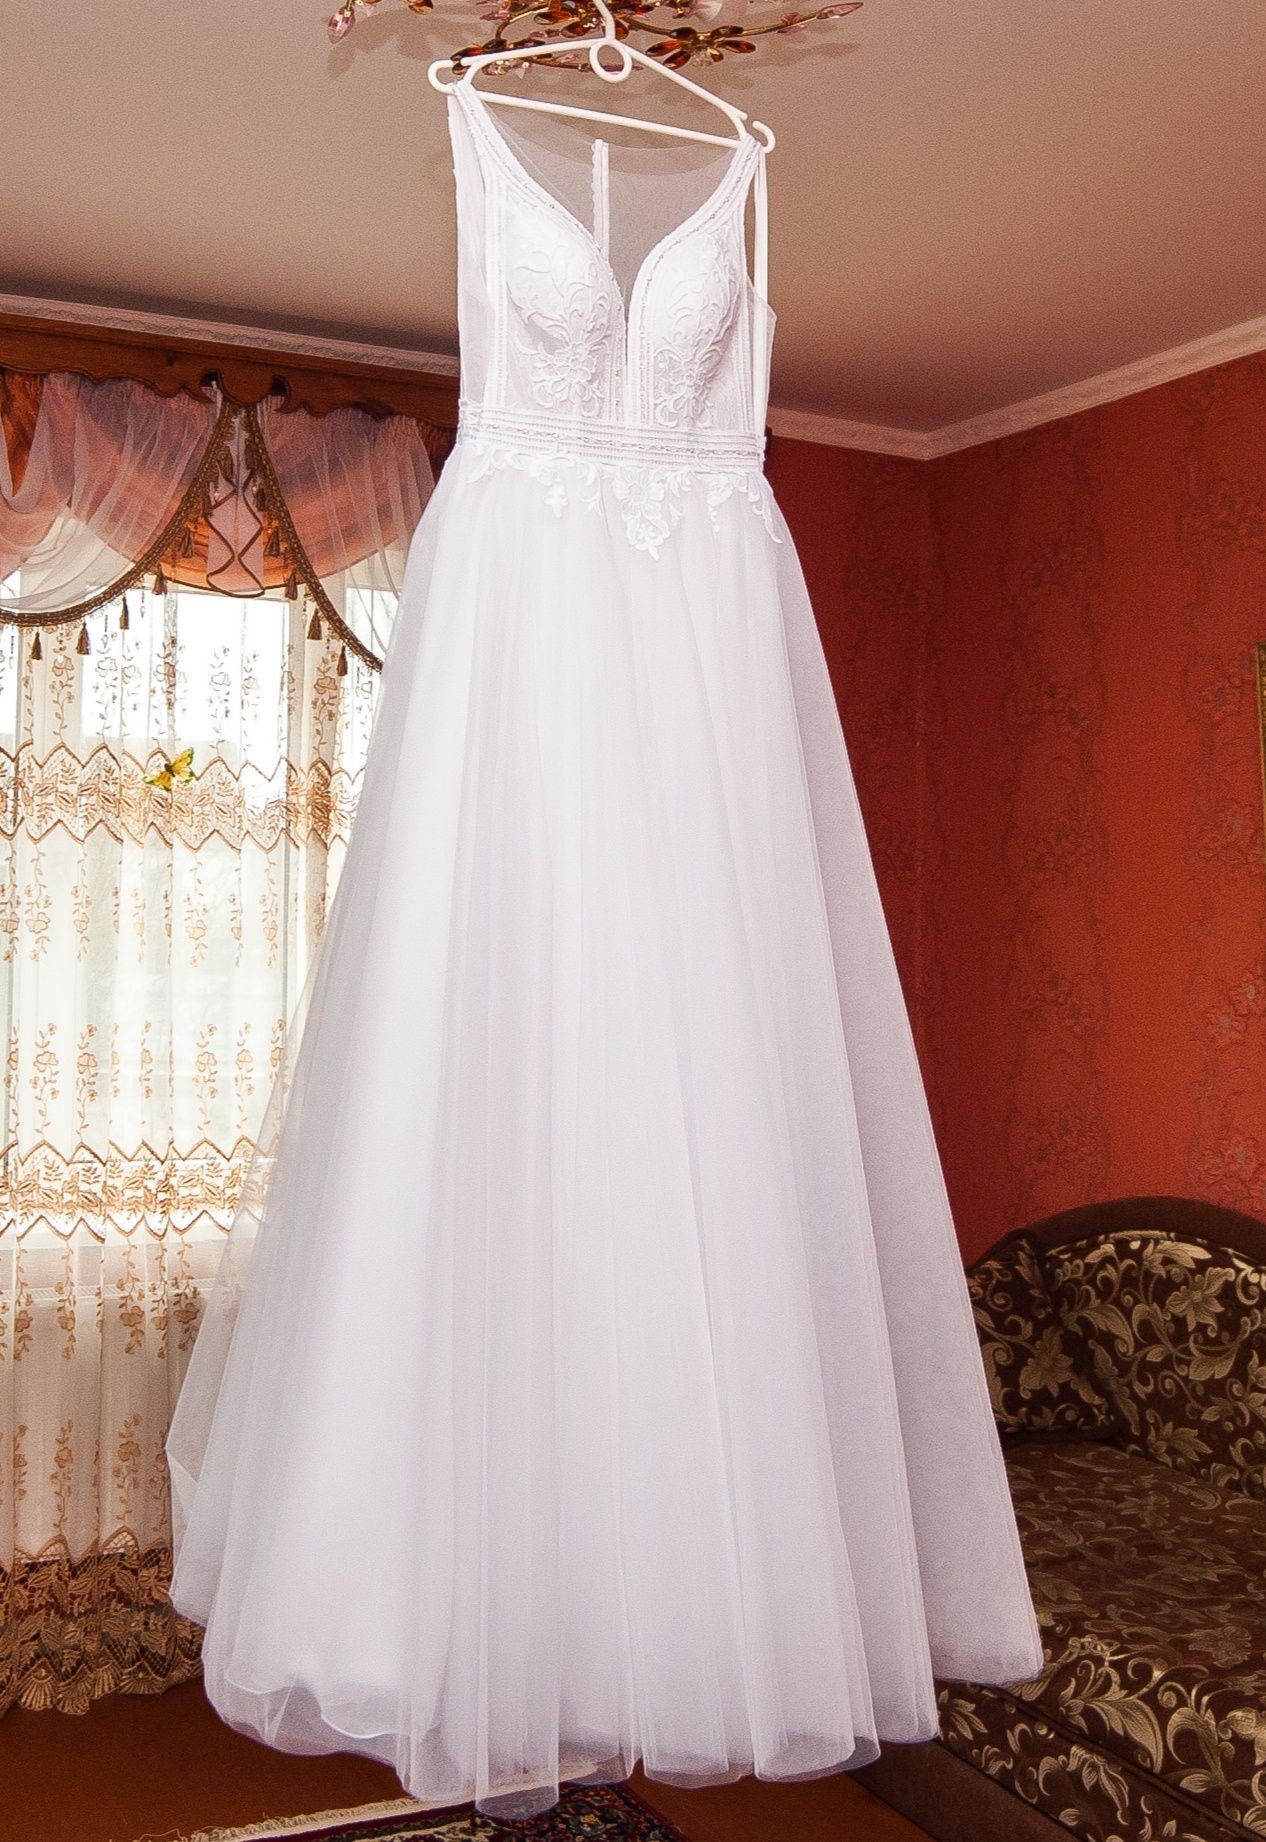 Весільна сукня/Свадебное платье